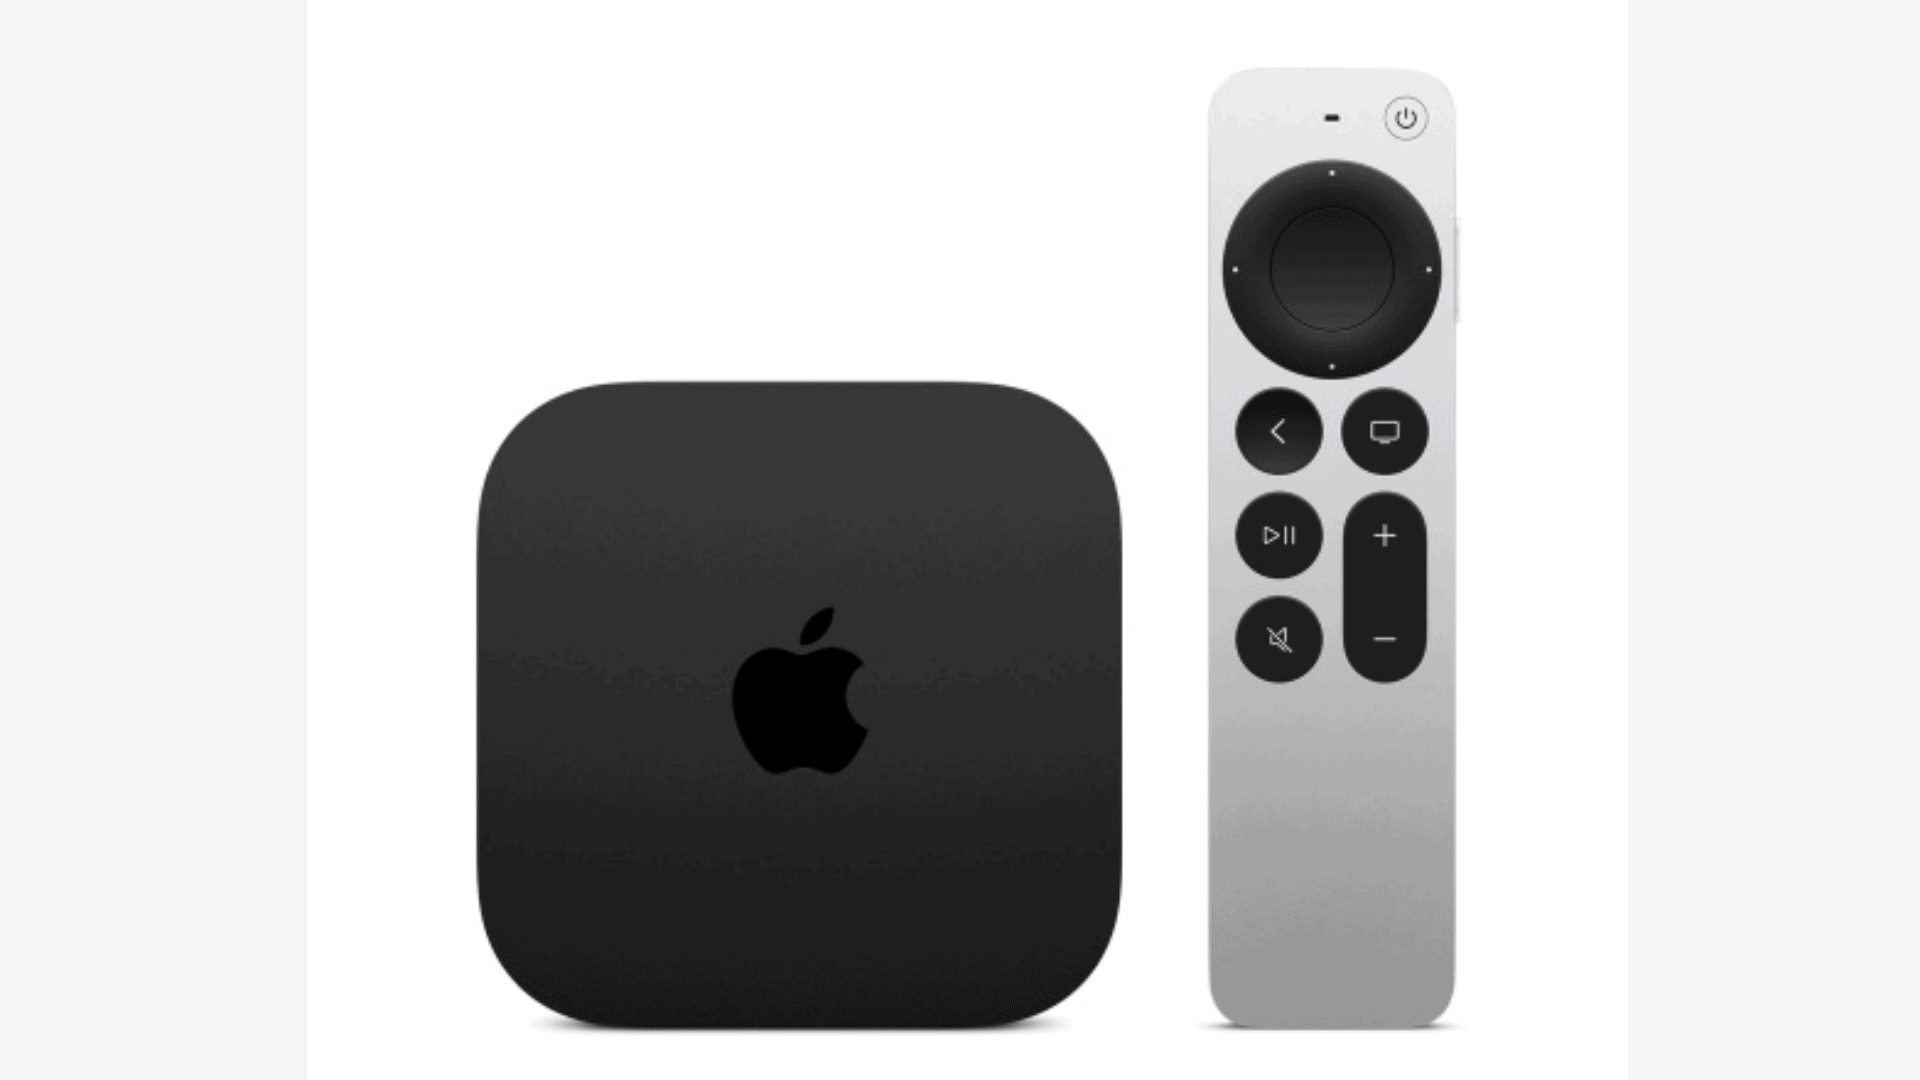 Verifique se o Apple TV está atualizado com as configurações de rede mais recentes.
Entre em contato com o suporte da Apple para obter assistência adicional.